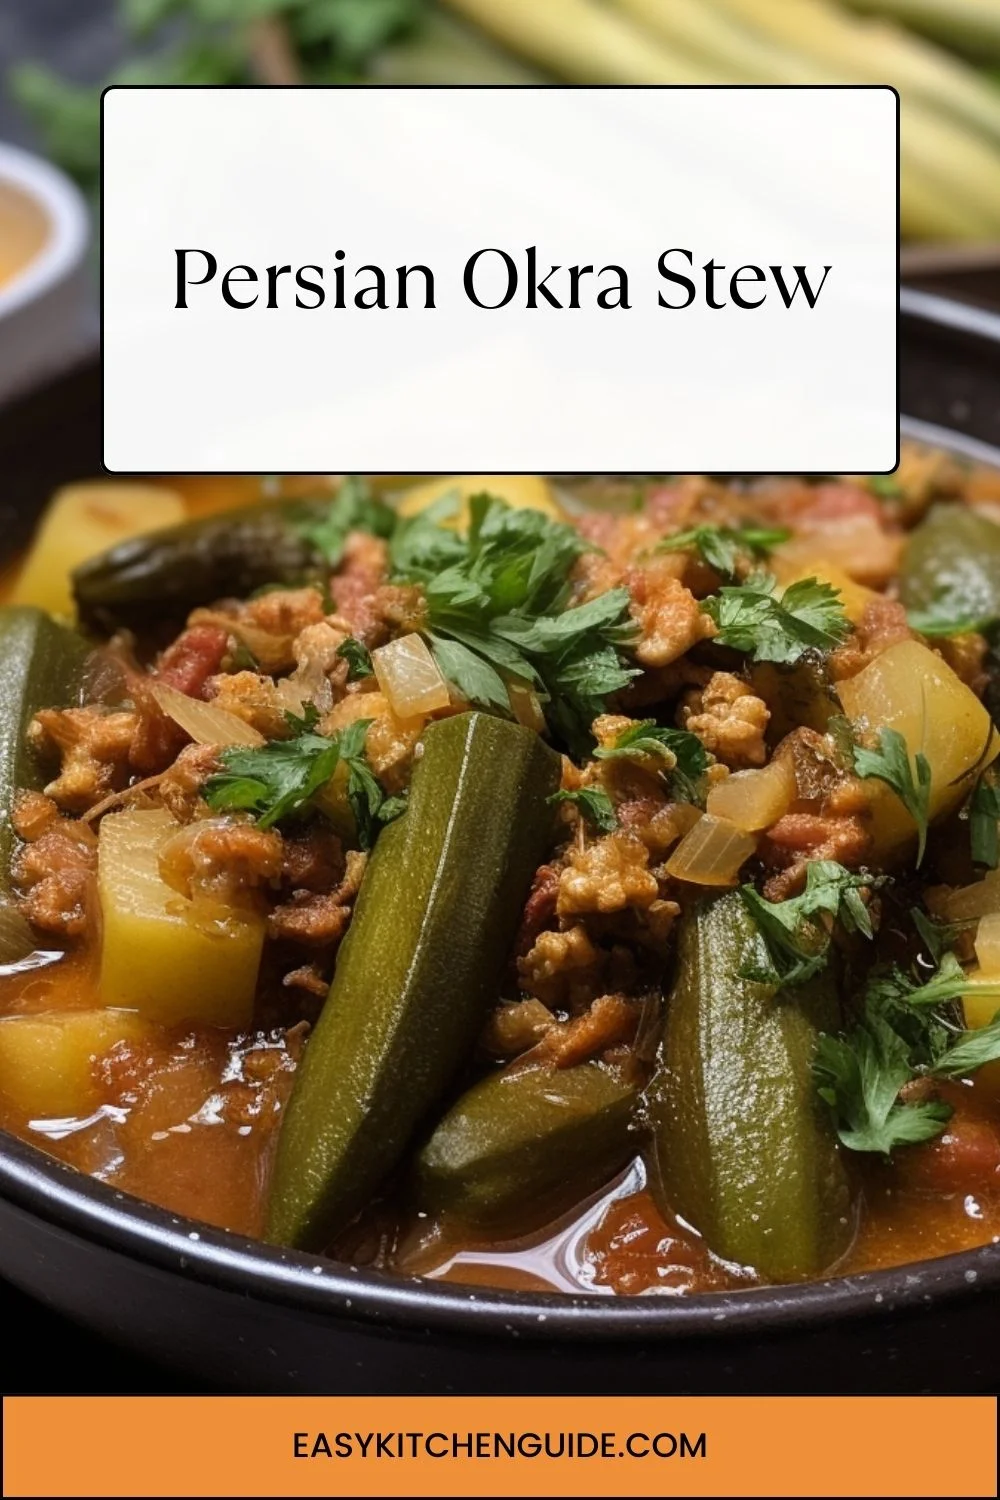 Persian Okra Stew